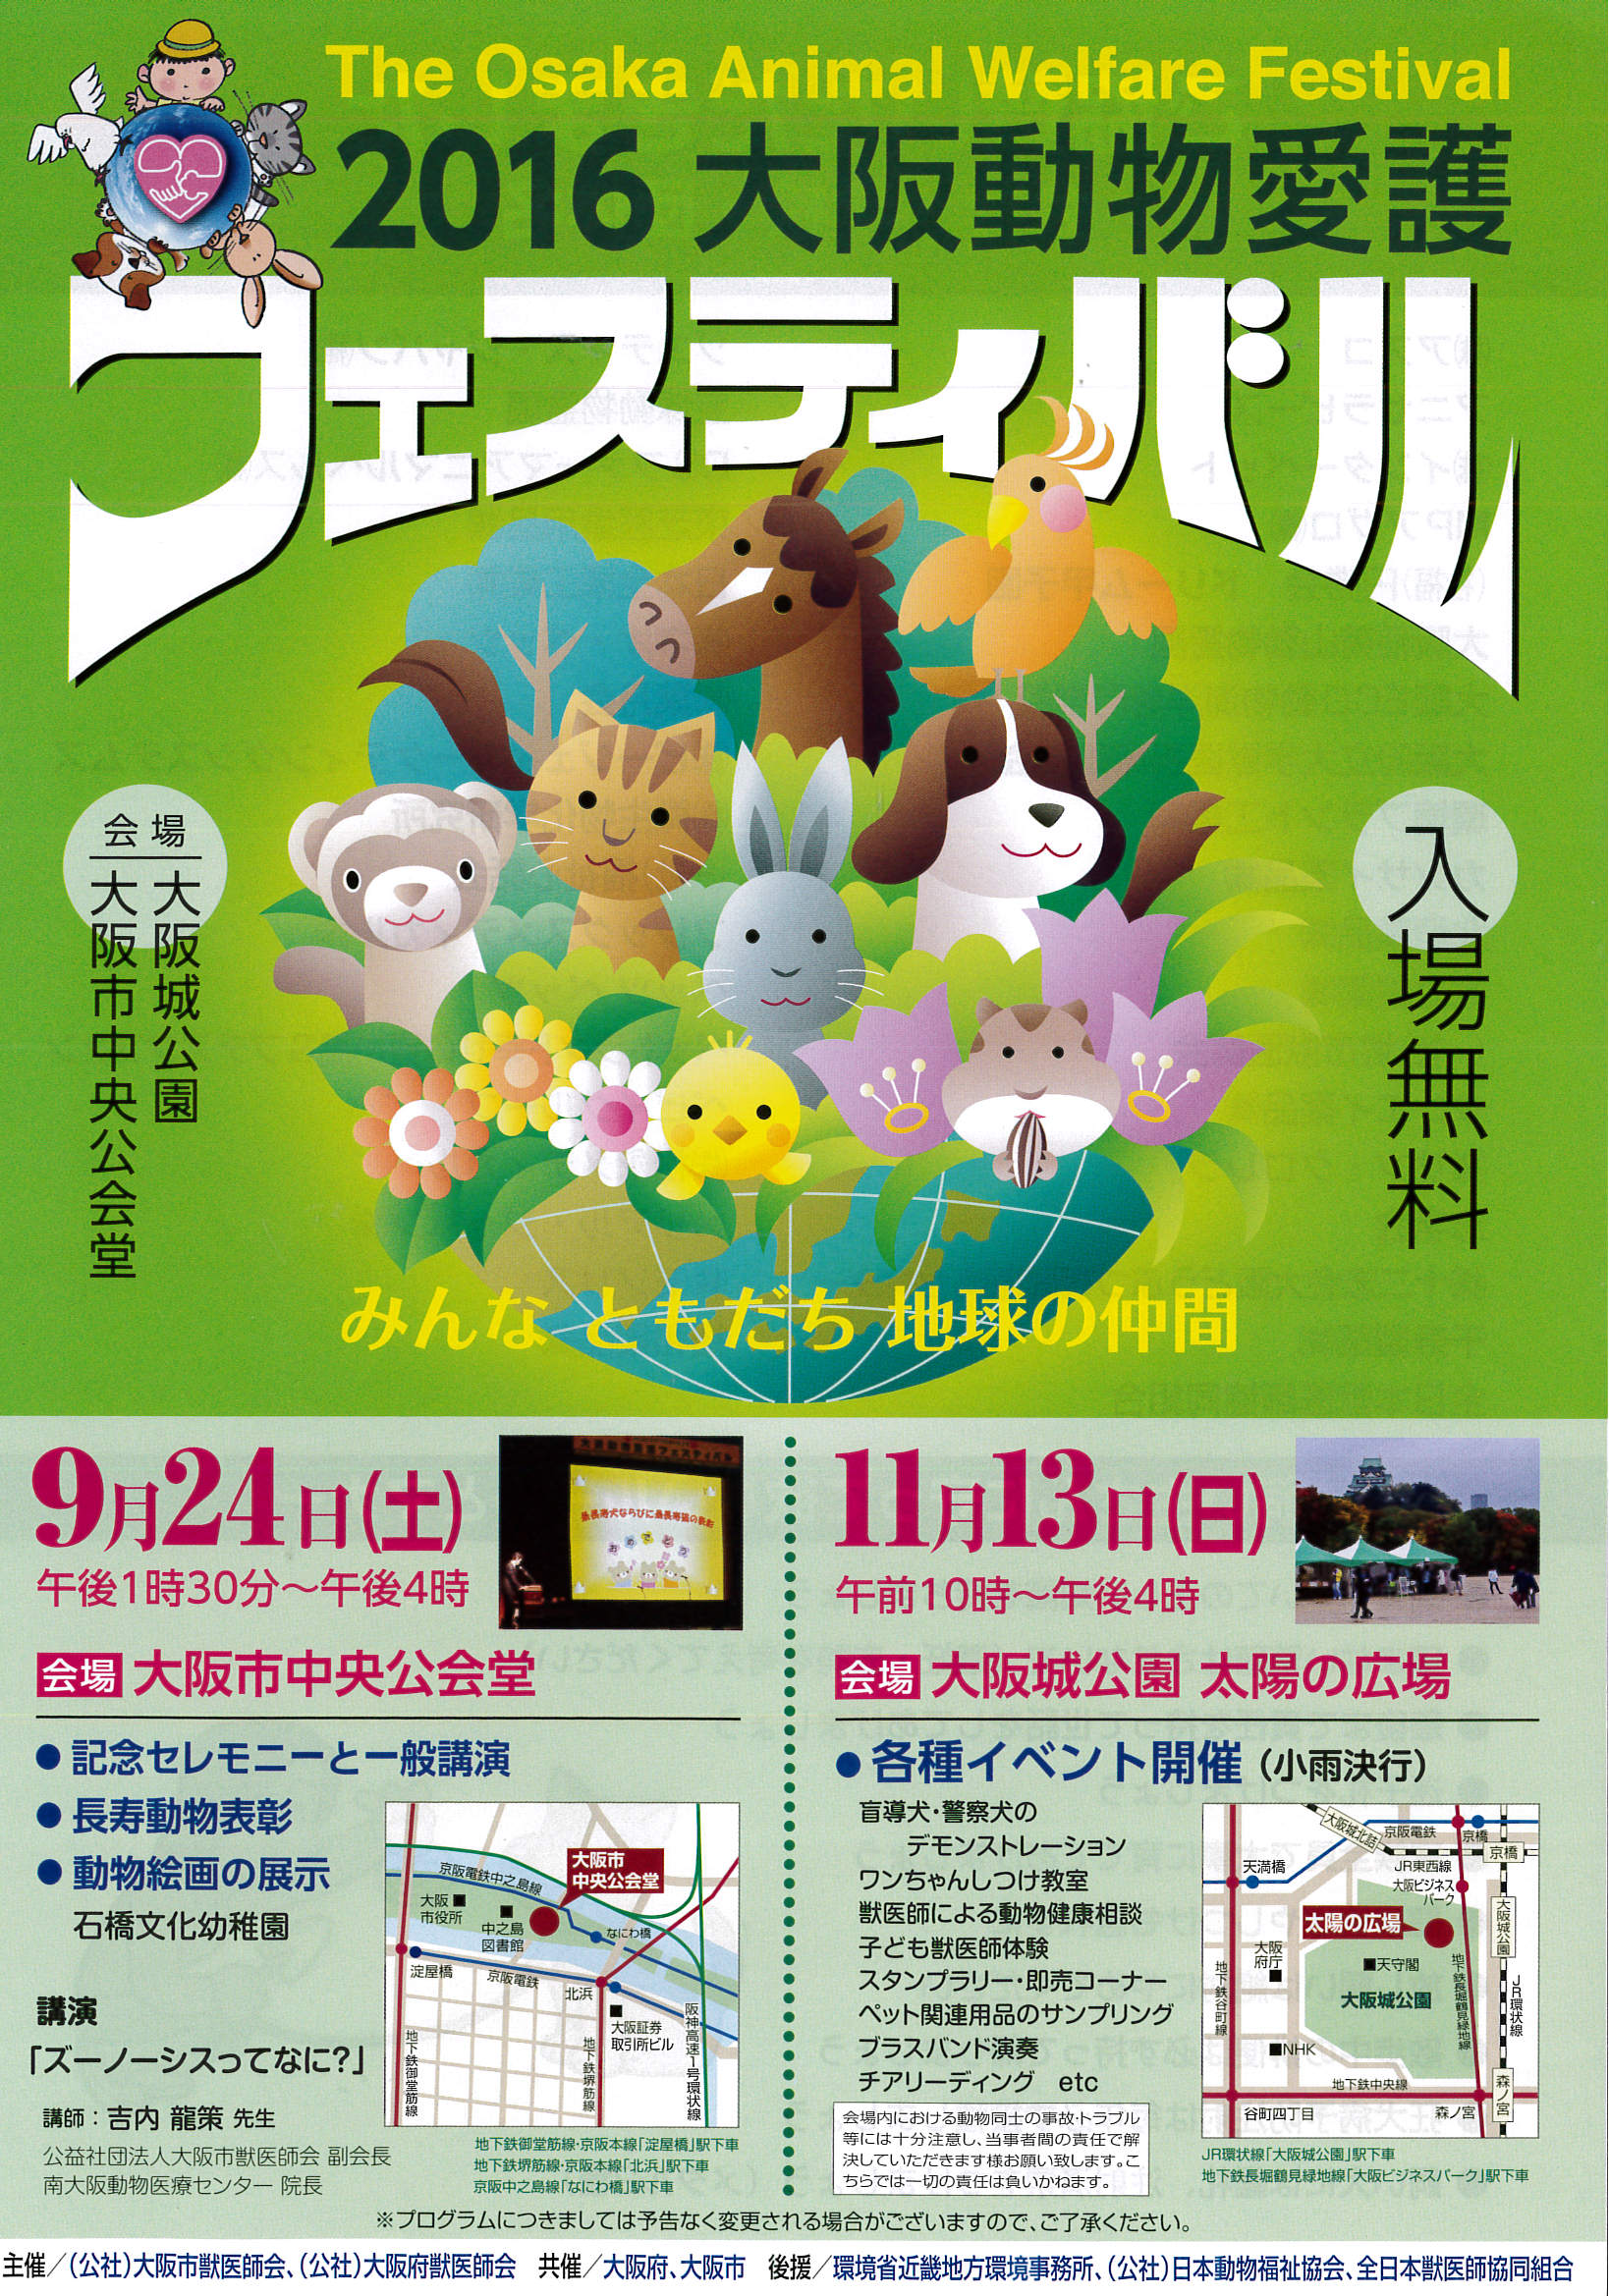 今週末は大阪城動物愛護フェスティバルに行ってみよう！